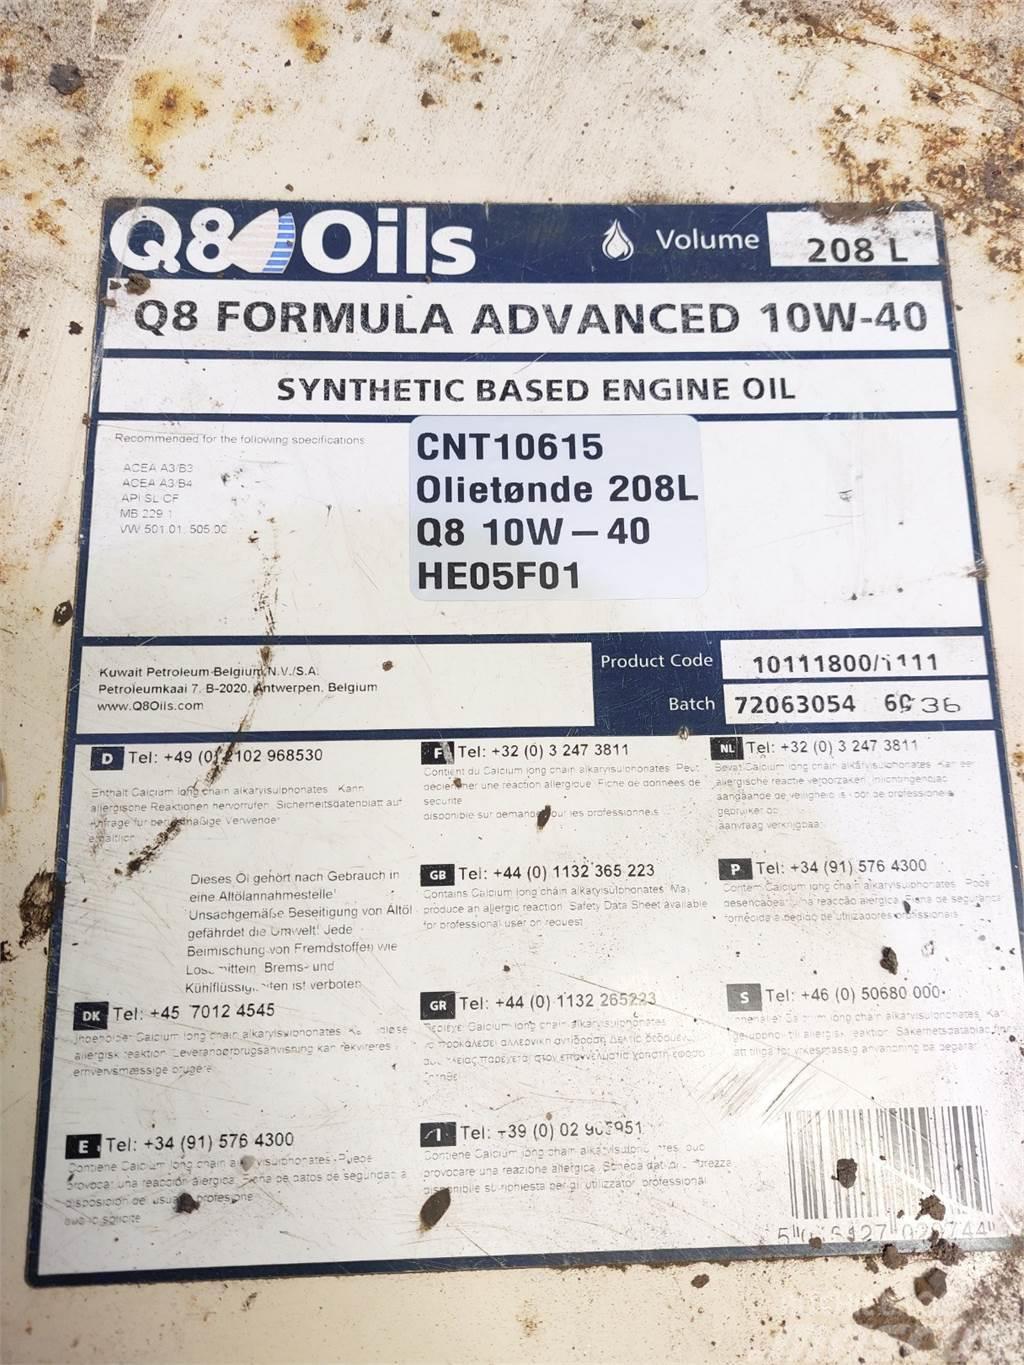  Oiletønde 208L Q8 10W-40 Synthetich Based Annet